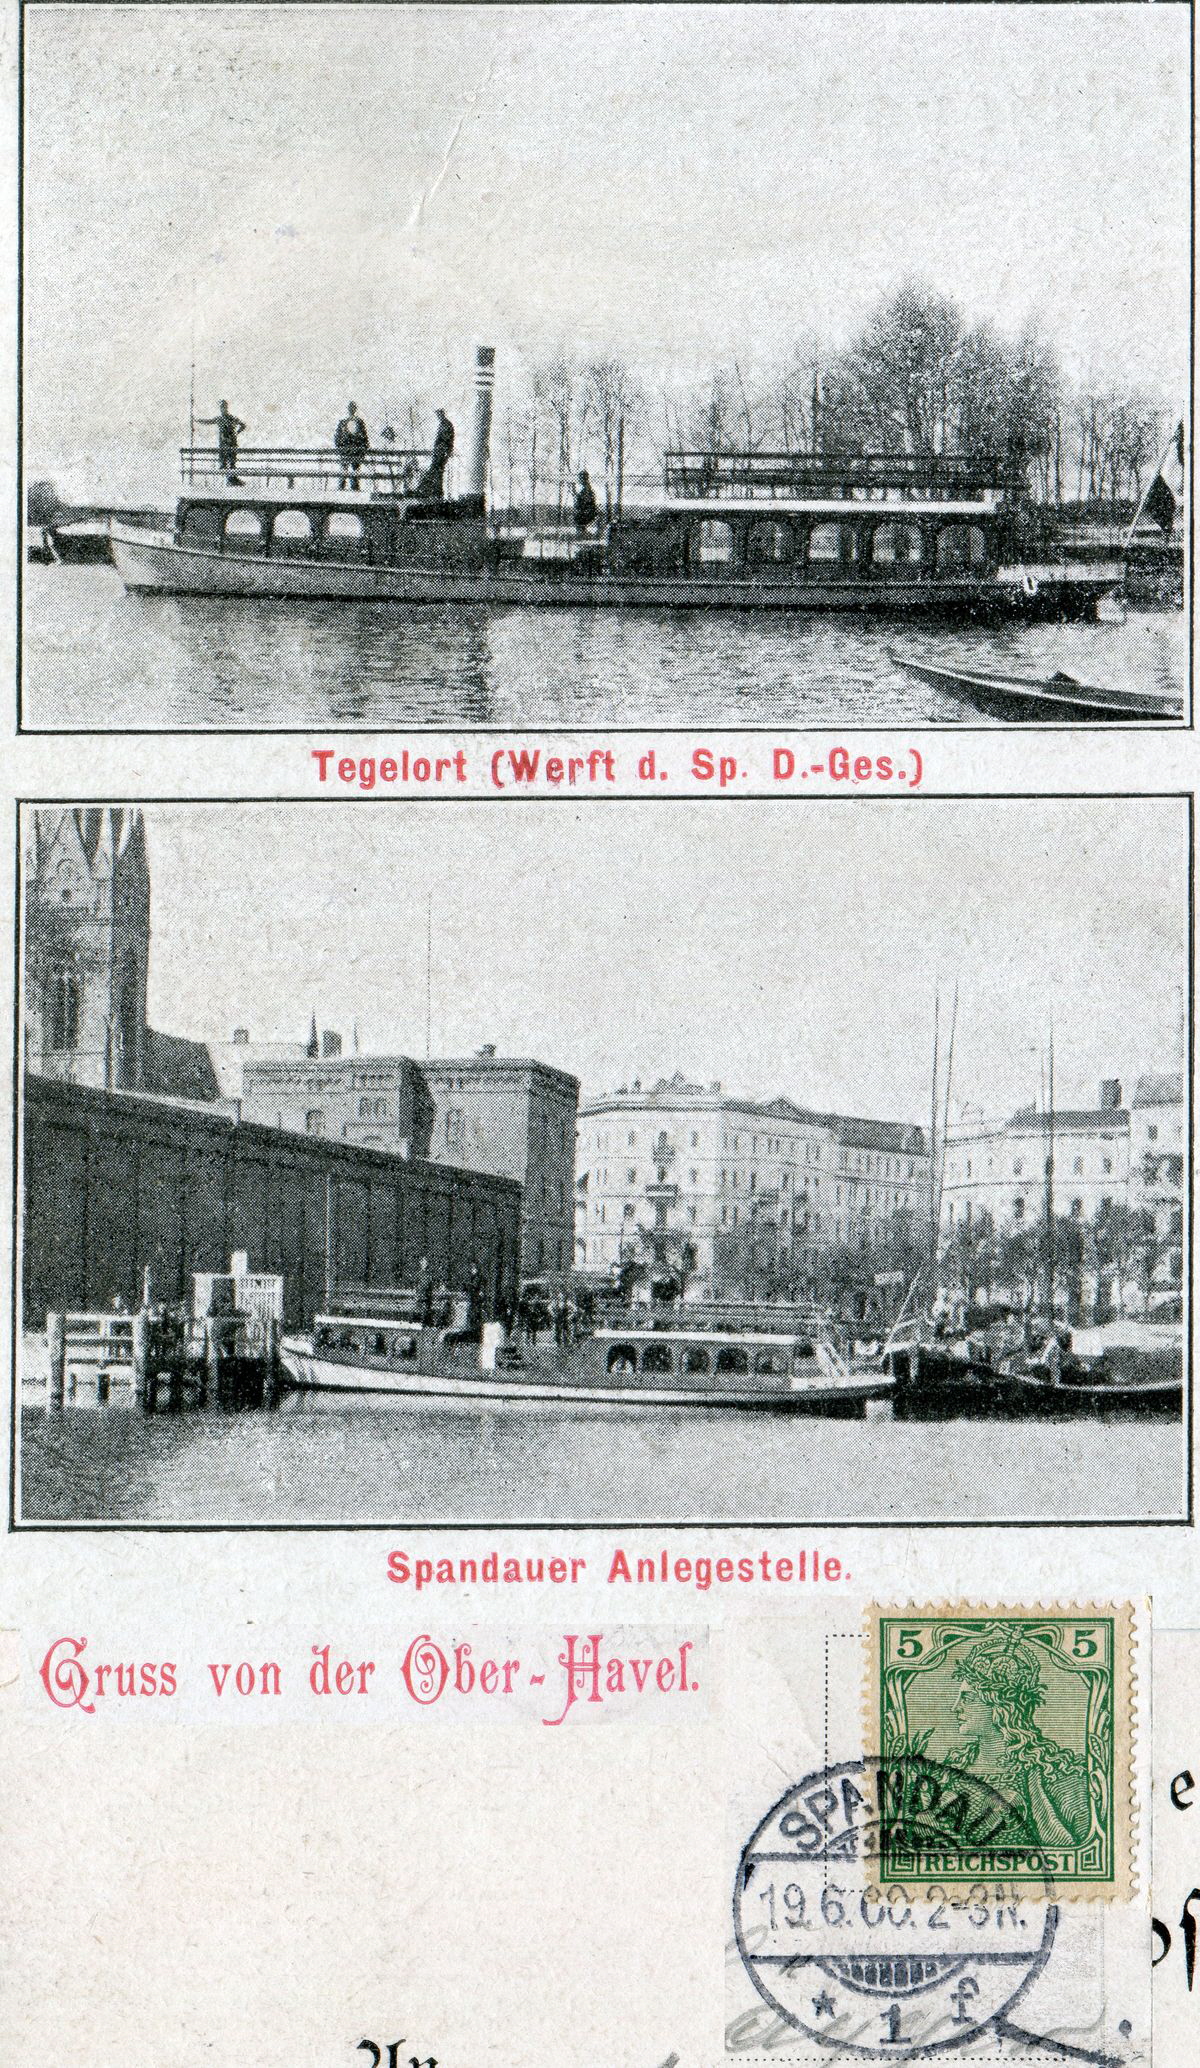 1900-06-19 Spandauer Dampf Schiffahrts-Gesellschaft evtl. Schwan und unbekannt klein